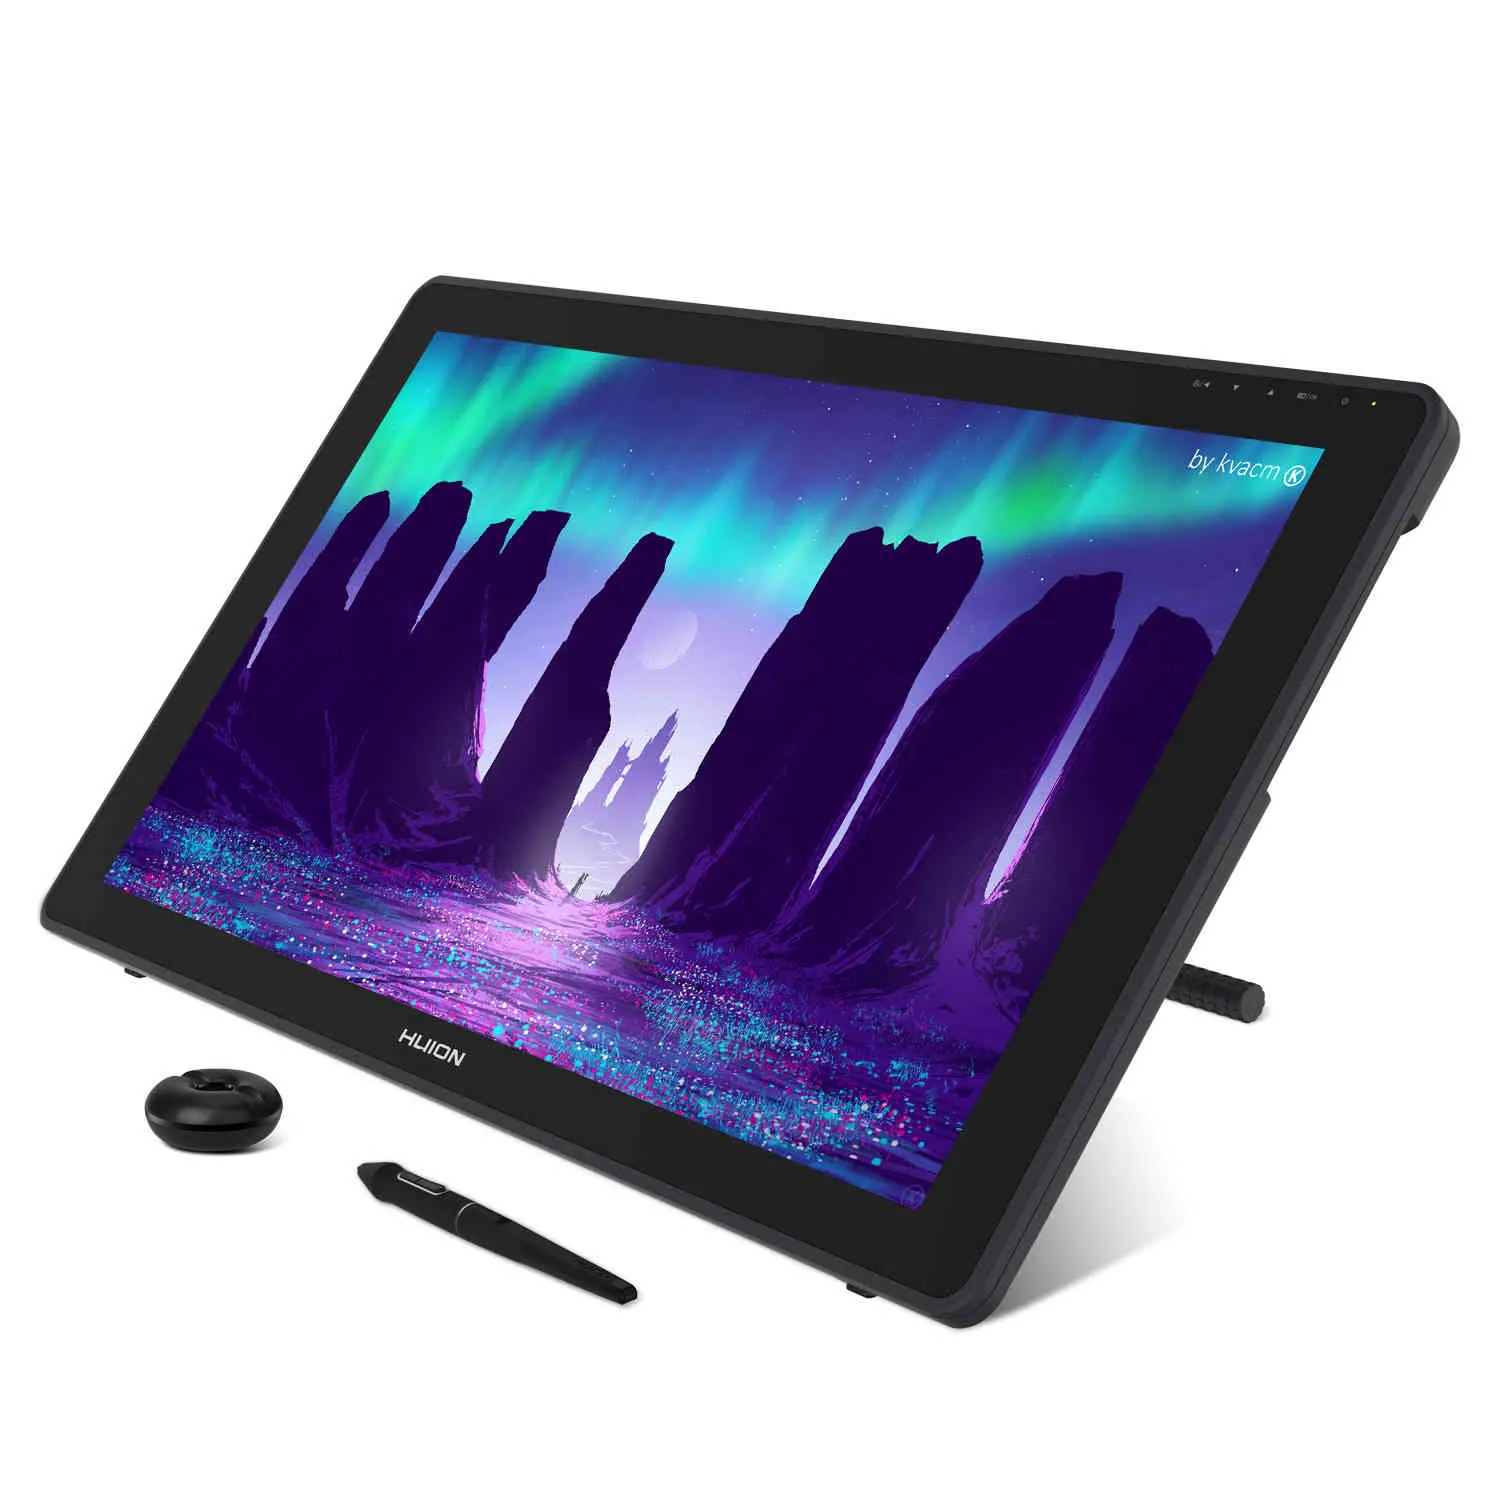 HUION Kamvas 22 tablette graphique moniteur stylo affichage 21.5 pouces écran anti-éblouissant 120% s rvb Windows Mac et appareil Android